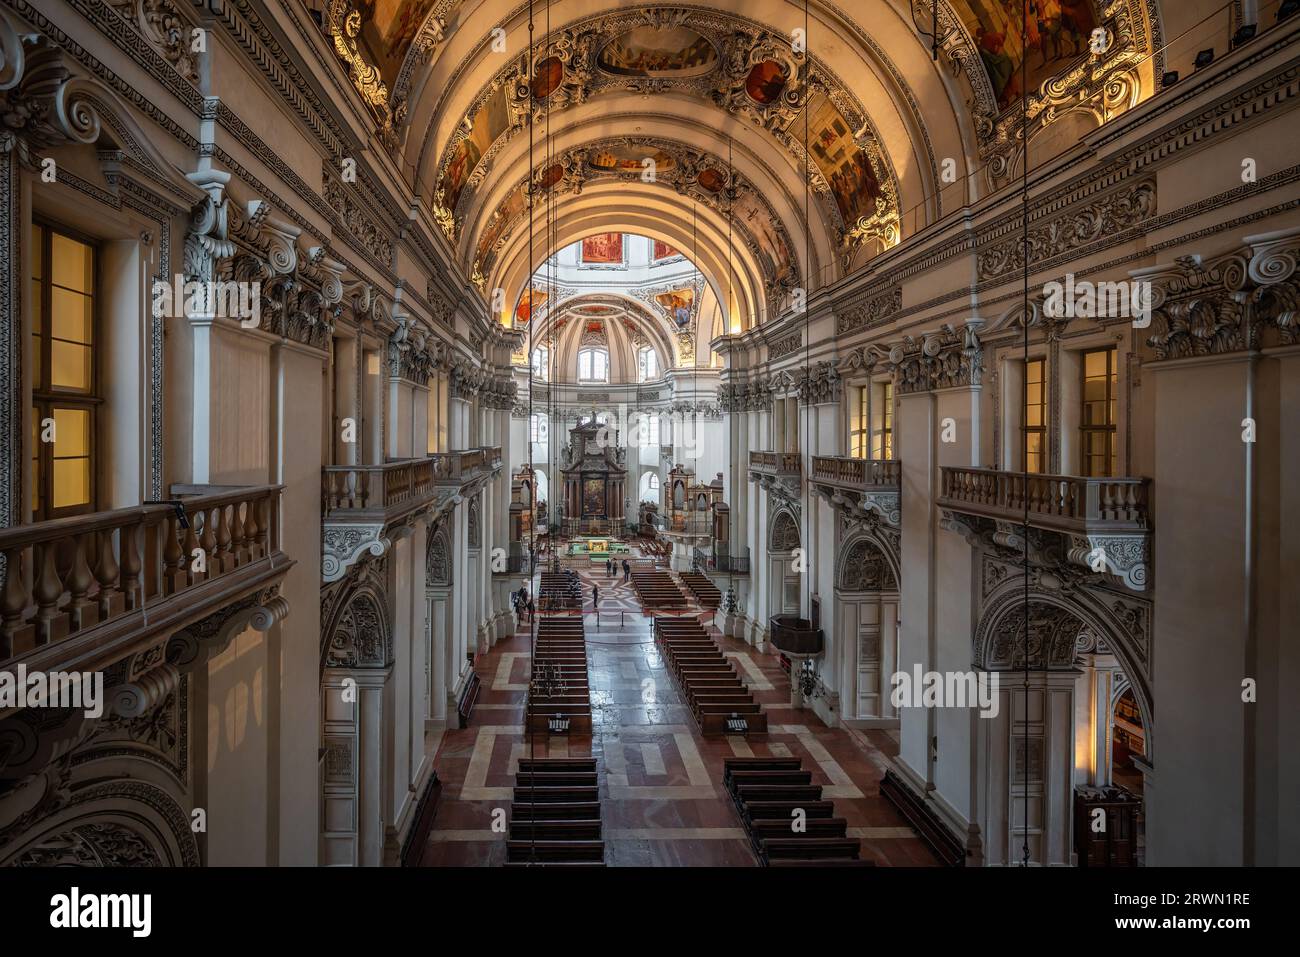 Intérieur de la cathédrale de Salzbourg - Salzbourg, Autriche Banque D'Images